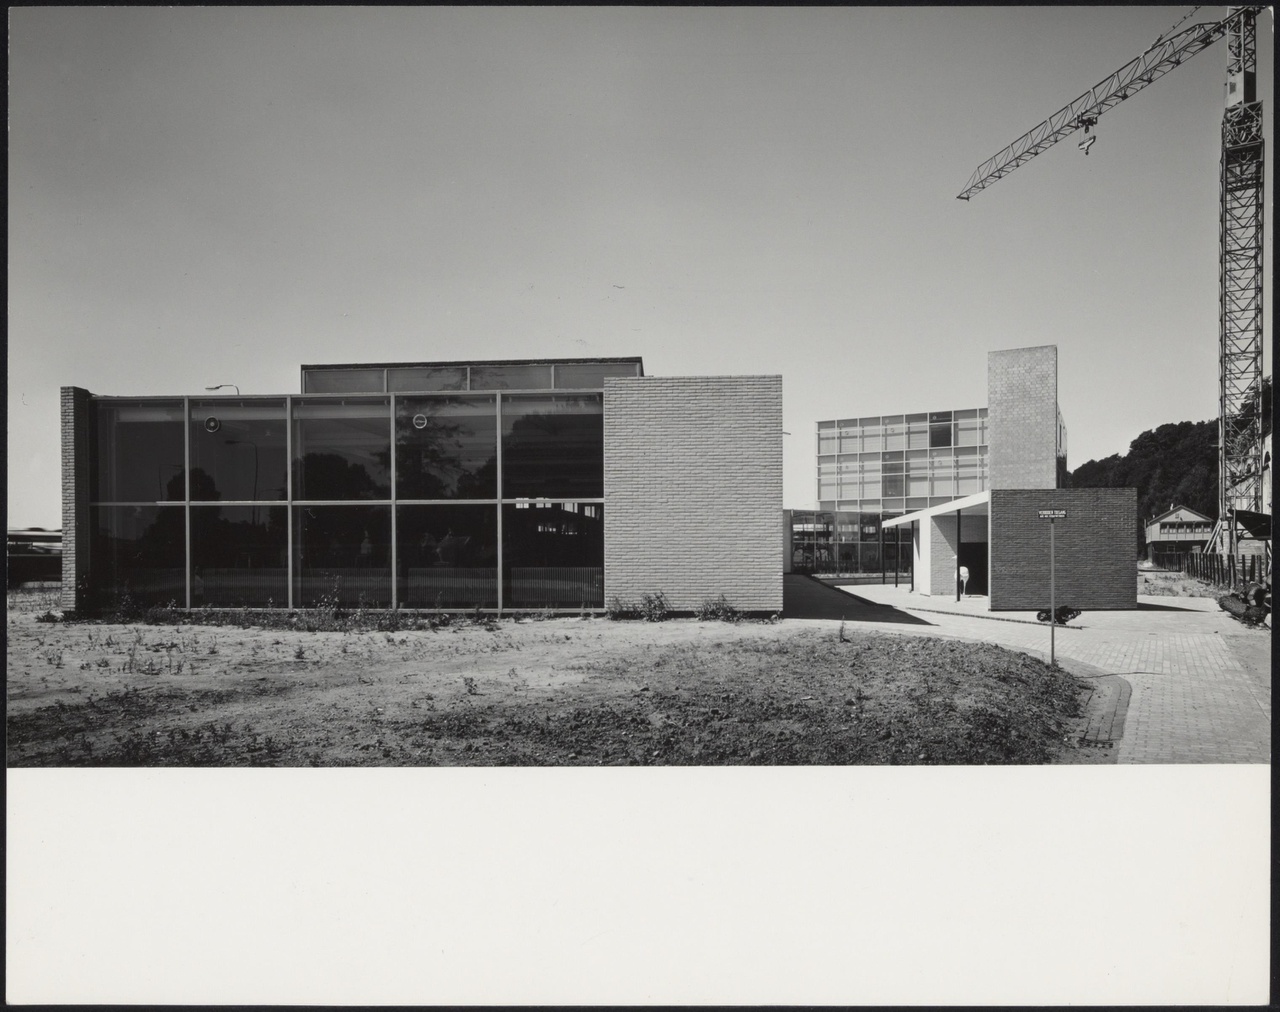 Afbeelding van Kunstacademie Arnhem, 1963, oostzijde met bouwkraan